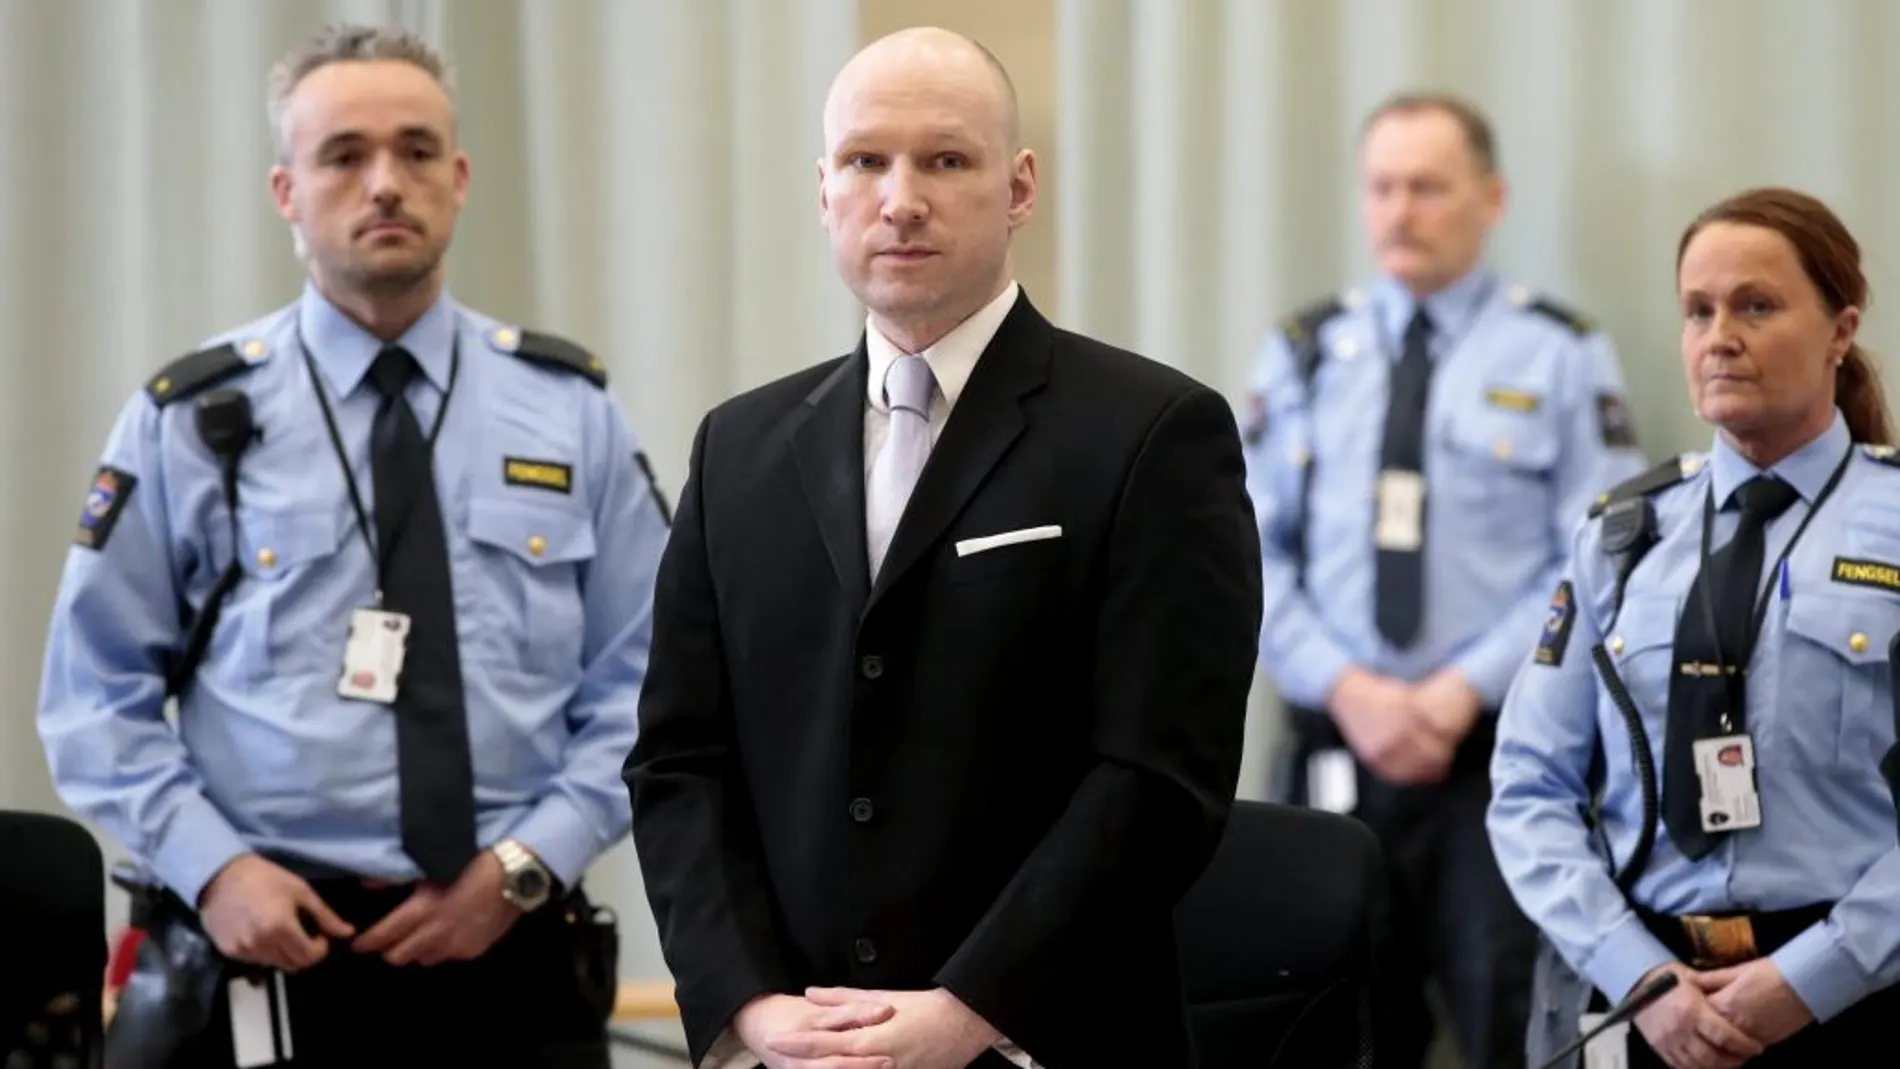 Fotografía fechada el 18 de marzo de 2016 que muestra al ultraderechista Anders Behring Breivik durante su cuarto y último día de juicio en la prisión de Skien (Noruega)